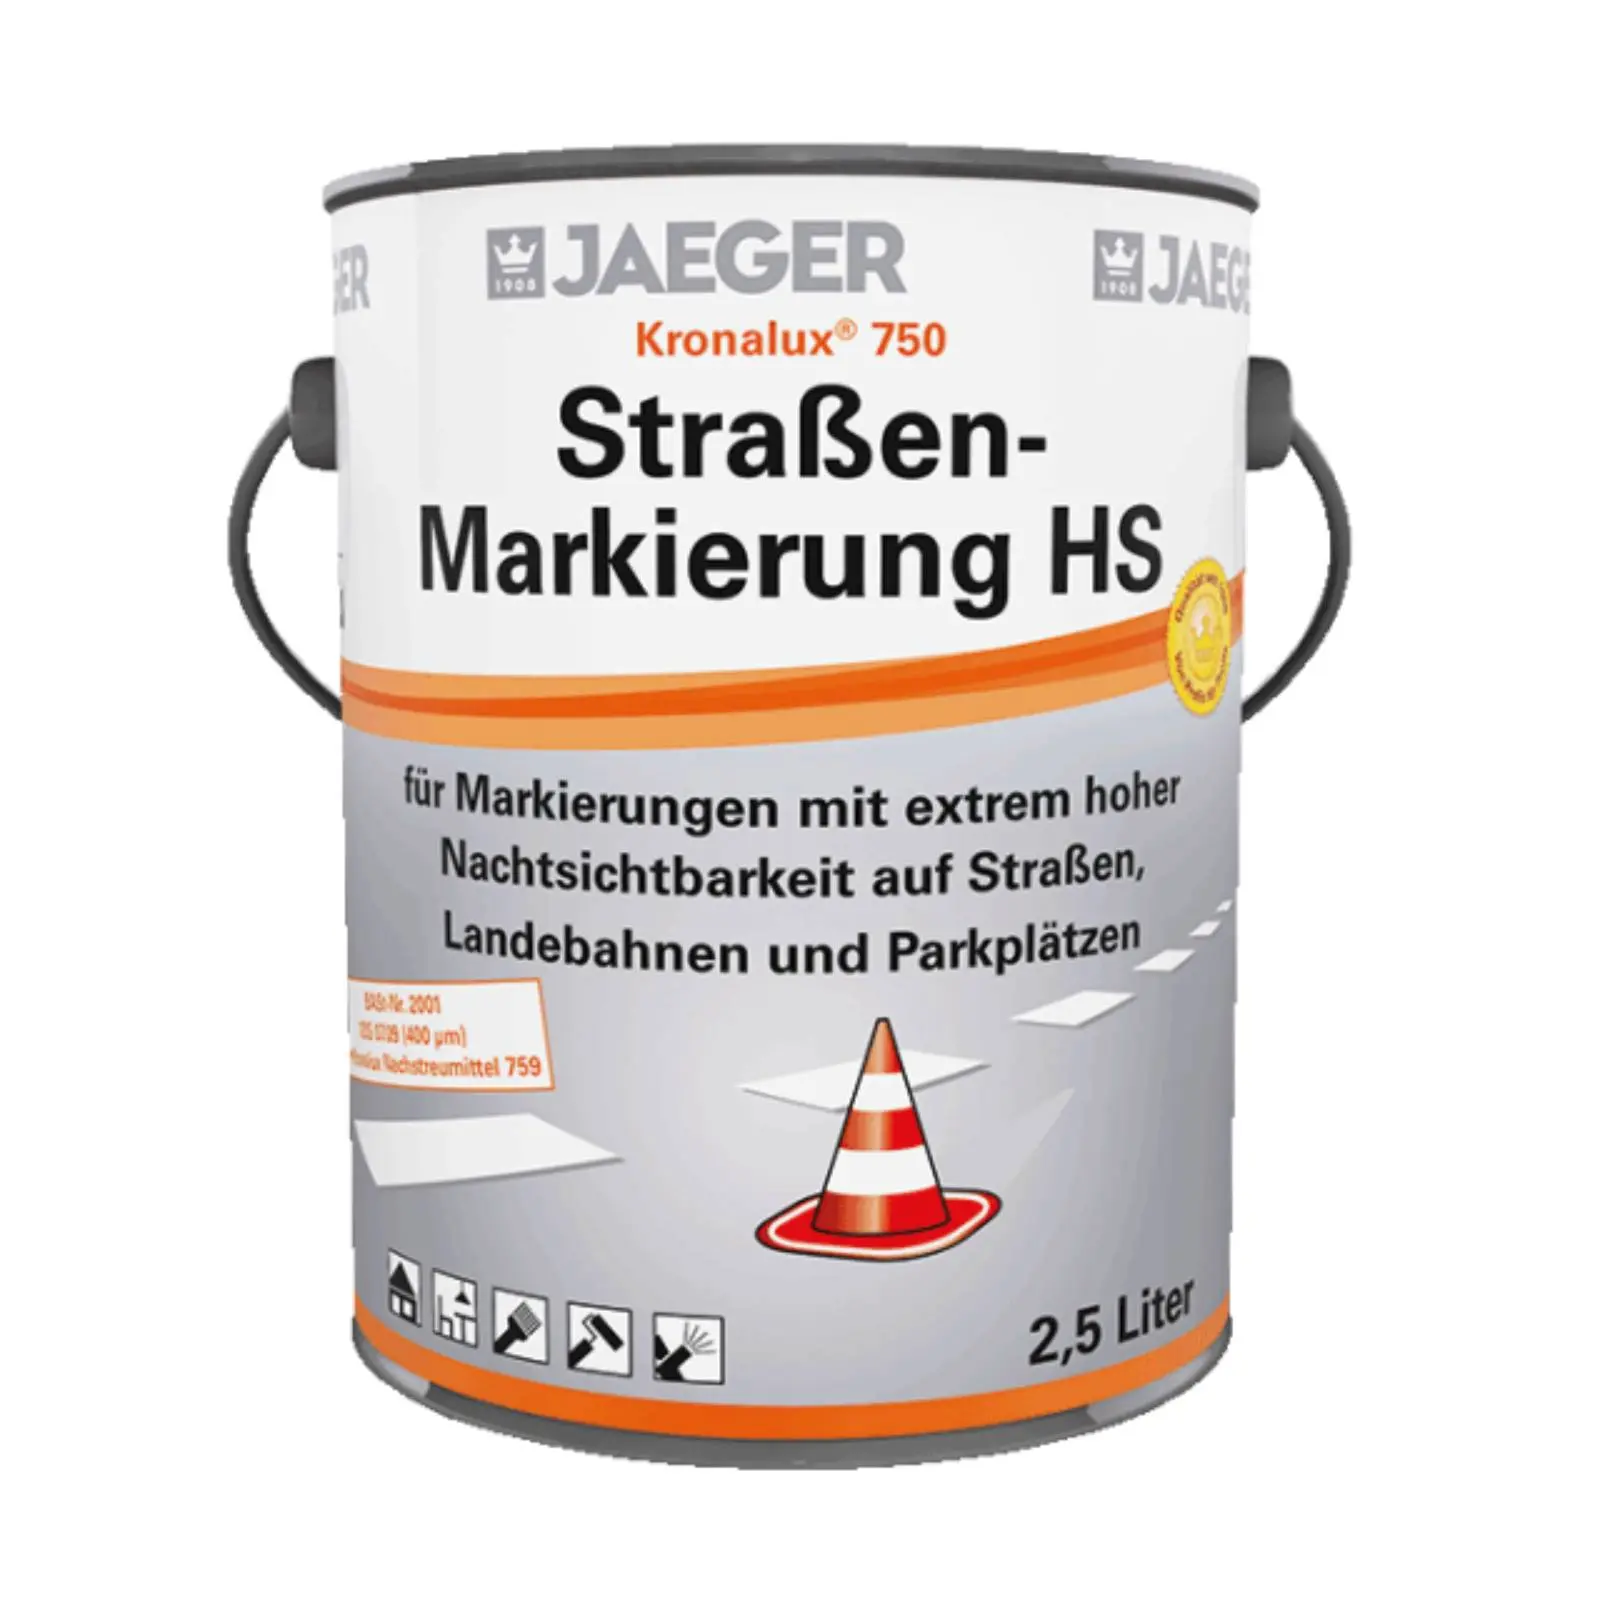 Jaeger Straßenmarkierungsfarbe HS Kronalux ® 750+751, weiß, 2,5l